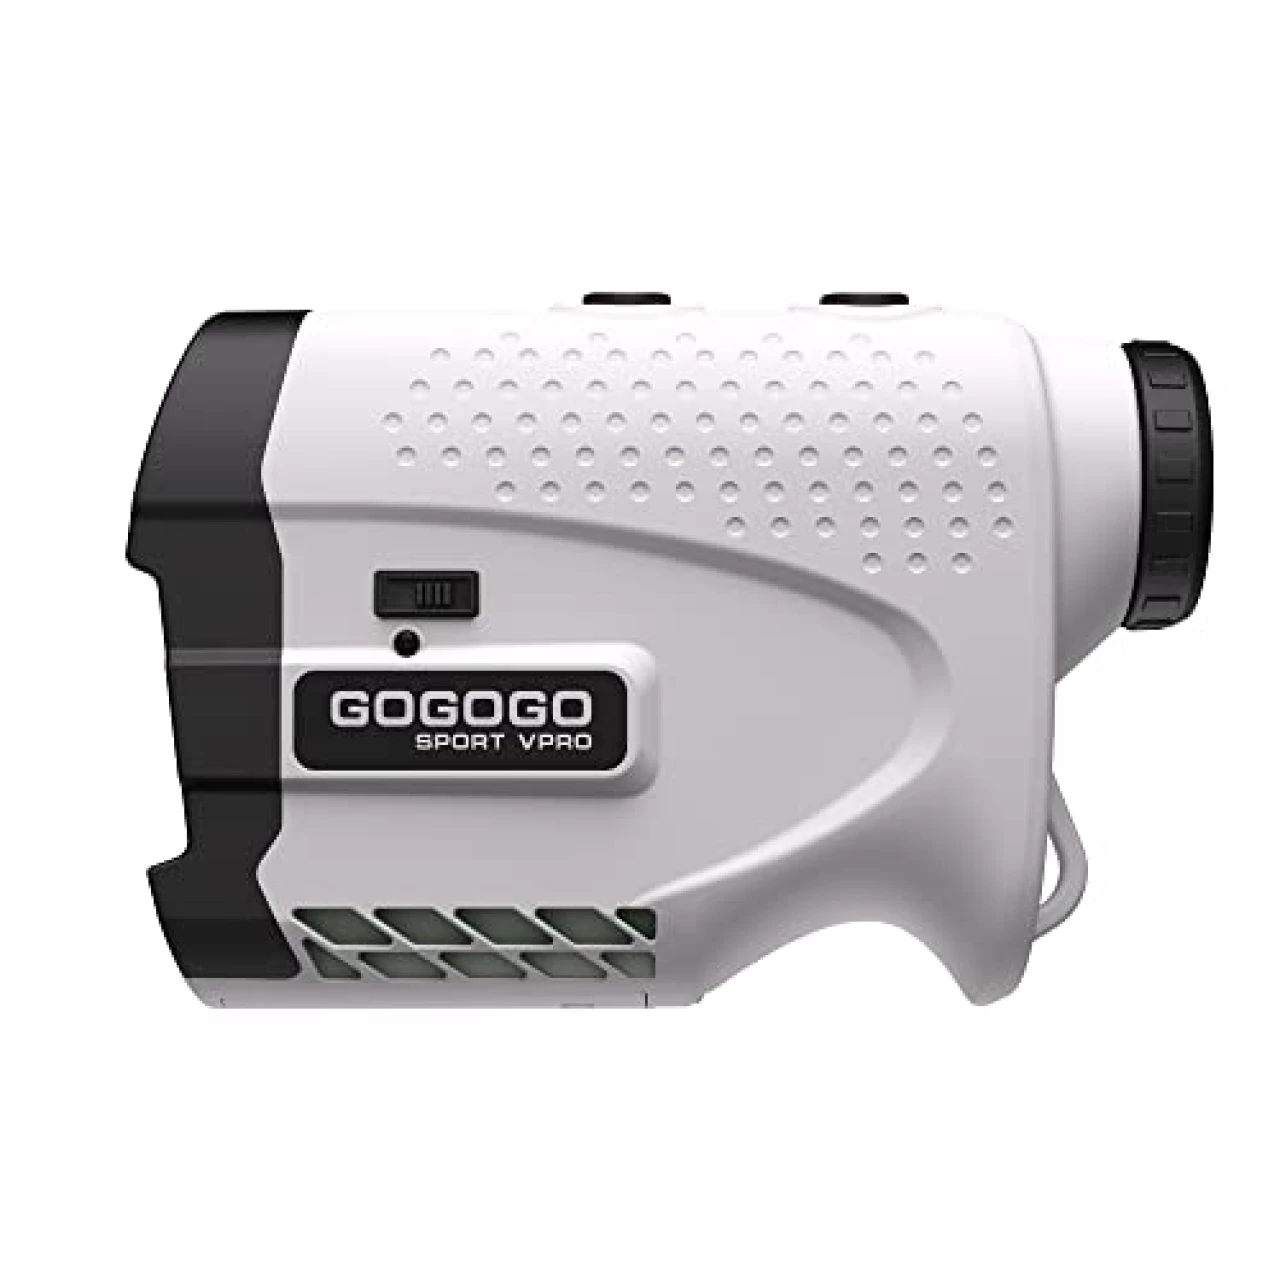 Gogogo Sport Vpro Laser Rangefinder for Golf &amp; Hunting Range Finder Distance Measuring